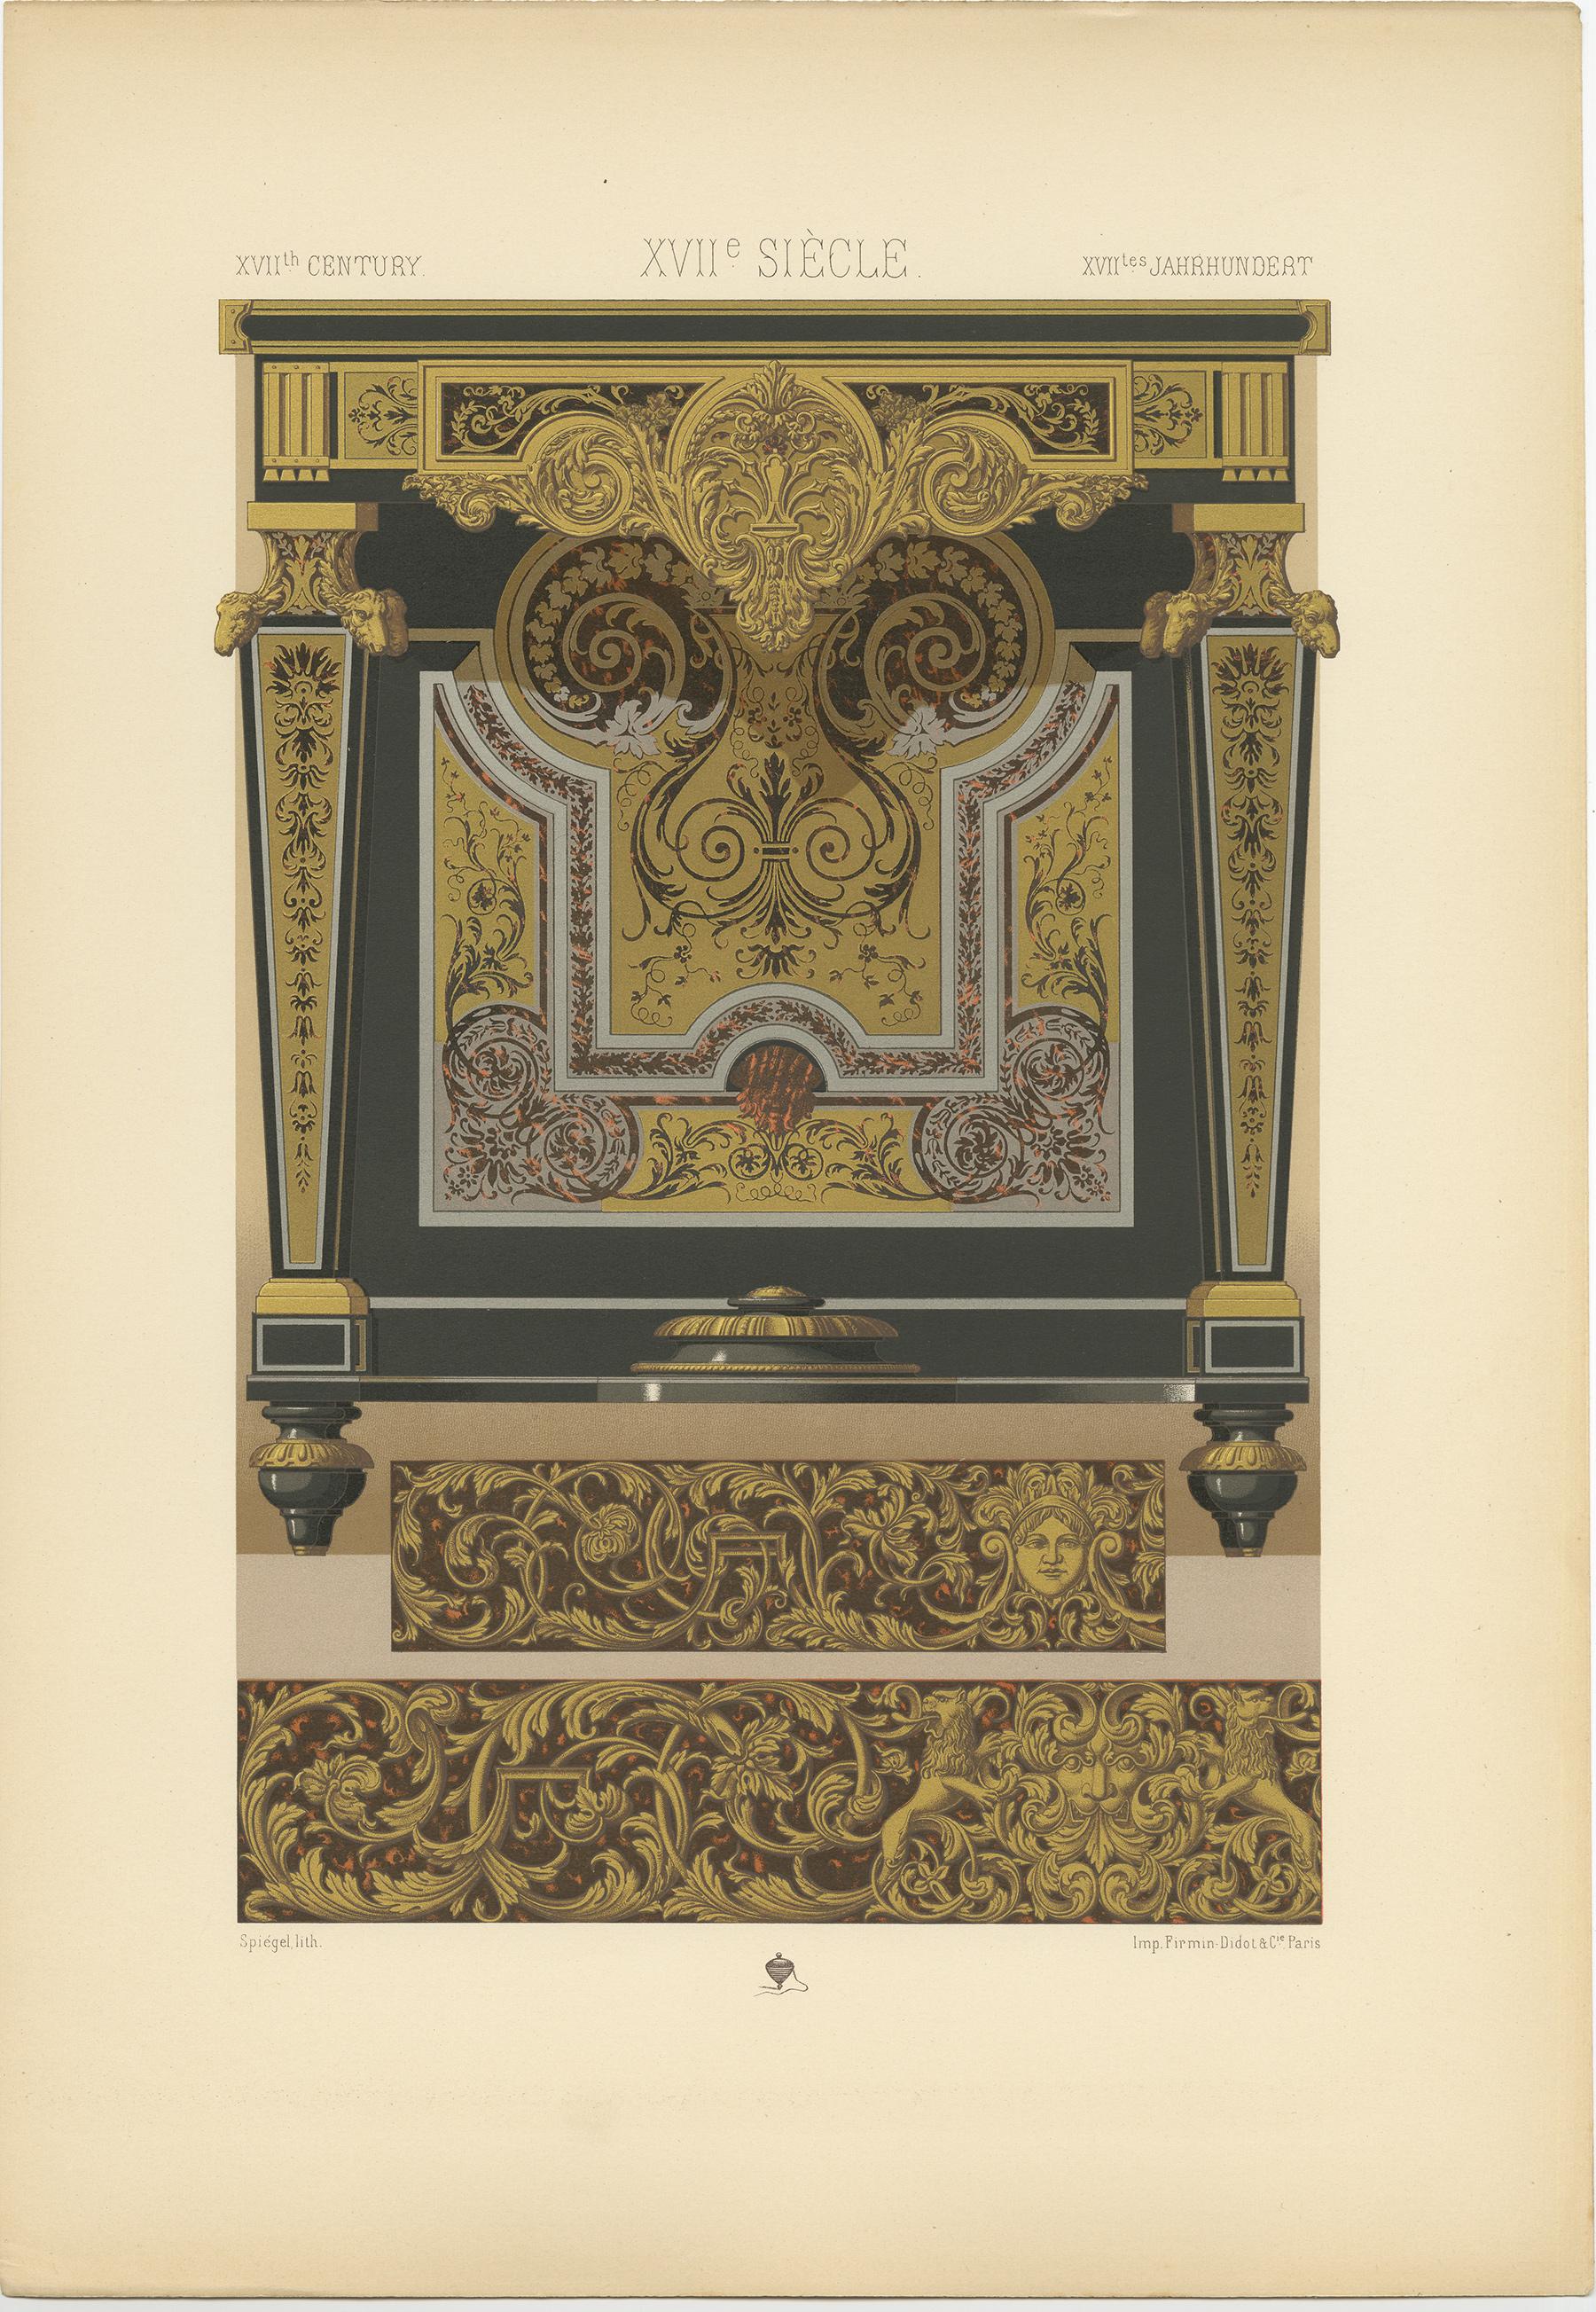 Gravure ancienne intitulée '17th Century - XVIIc Siècle - XVIILes Jahrhundert'. Chromolithographie de la table console de Charles - André Boulle avec des ornements en marqueterie métallique. Cette estampe est tirée de 